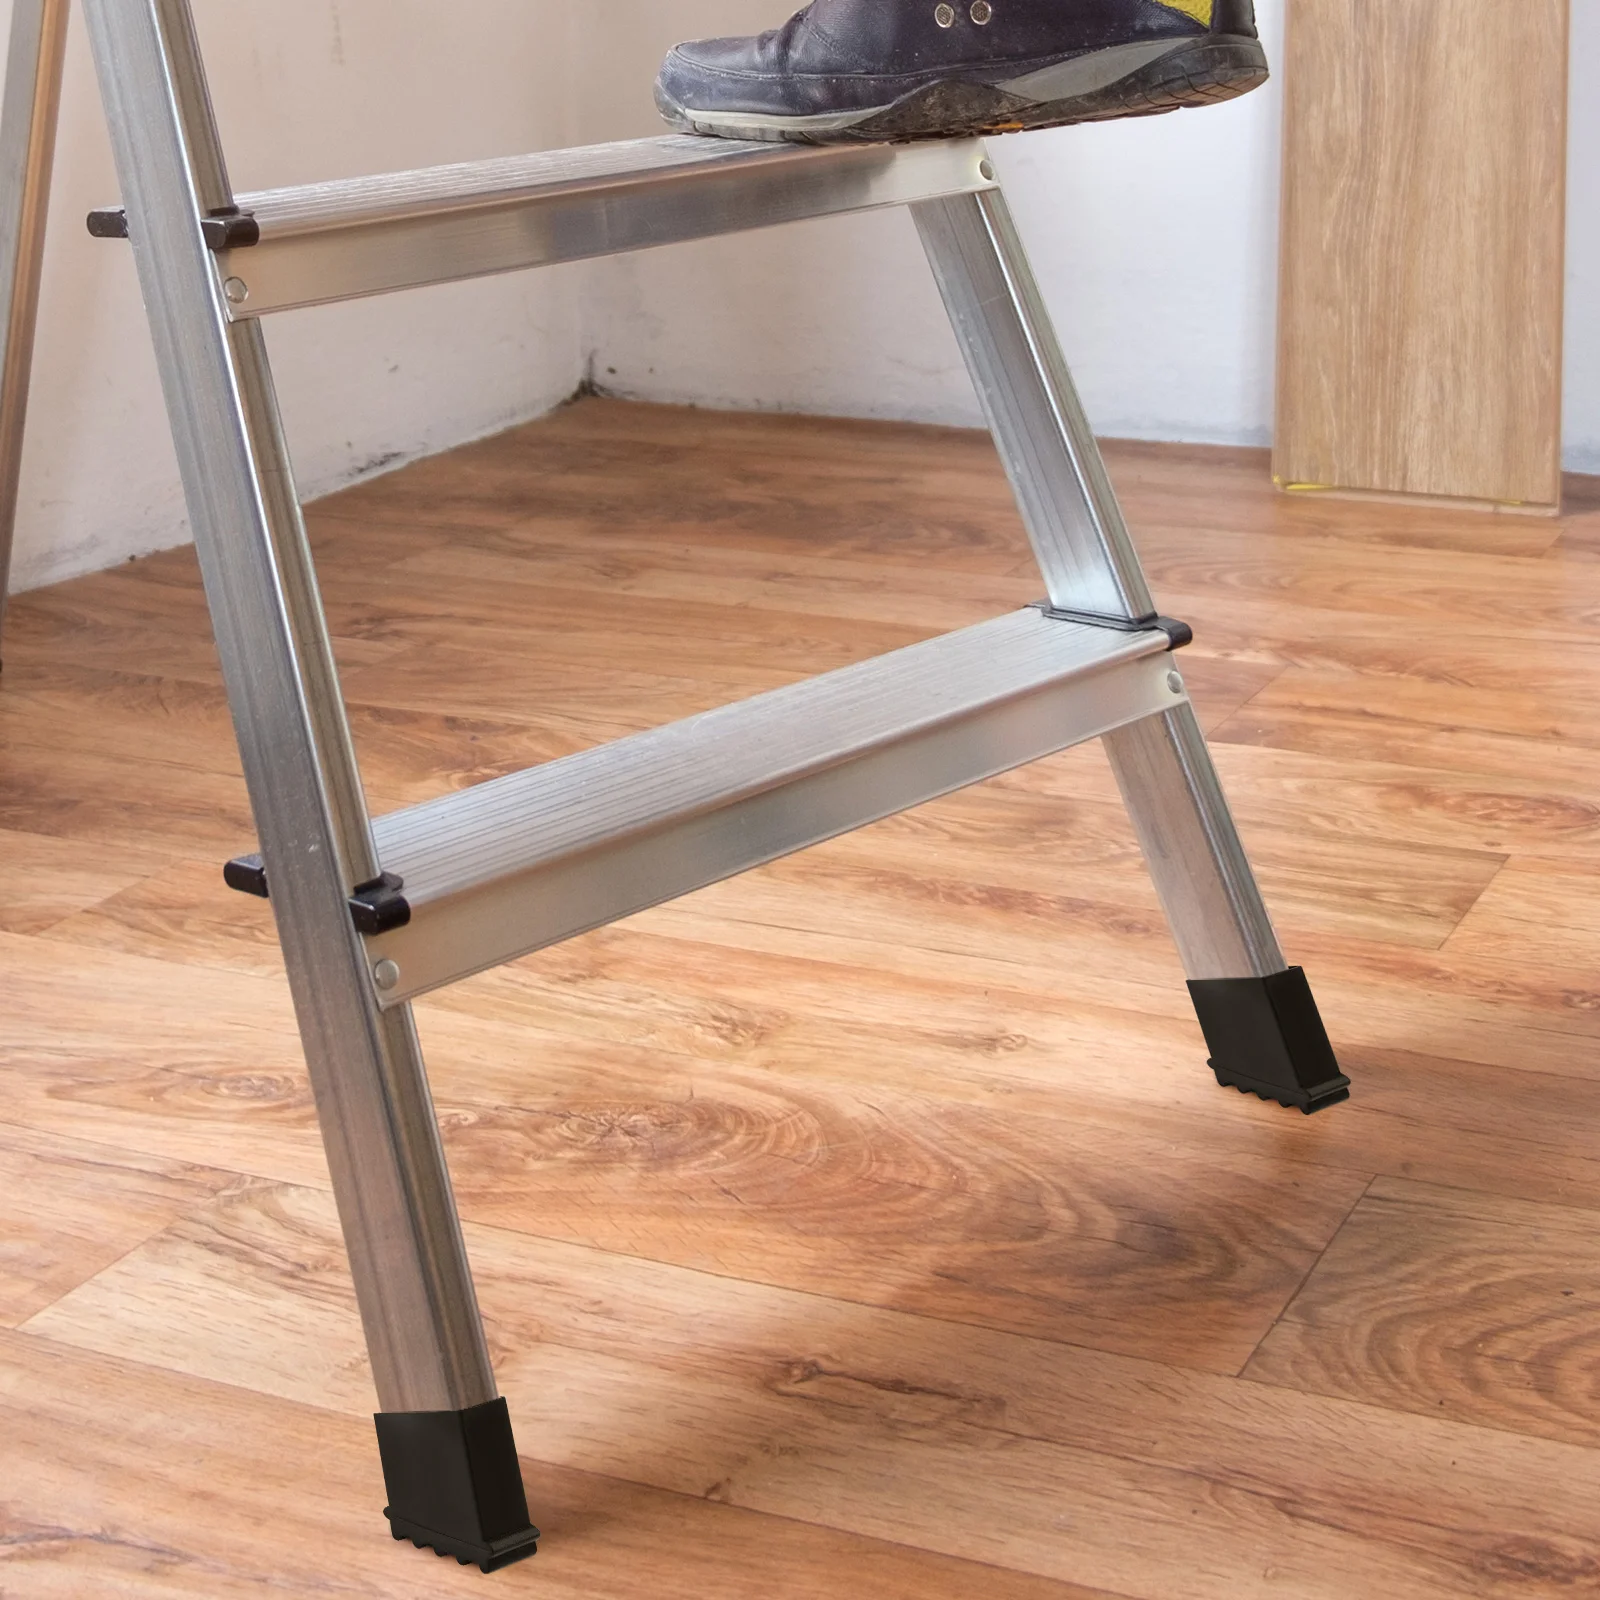 4 Stück Leiter Fuß abdeckung Füße Zubehör rutsch feste Polster umfasst Holz Tischbeine Gummis chutz Rest matte